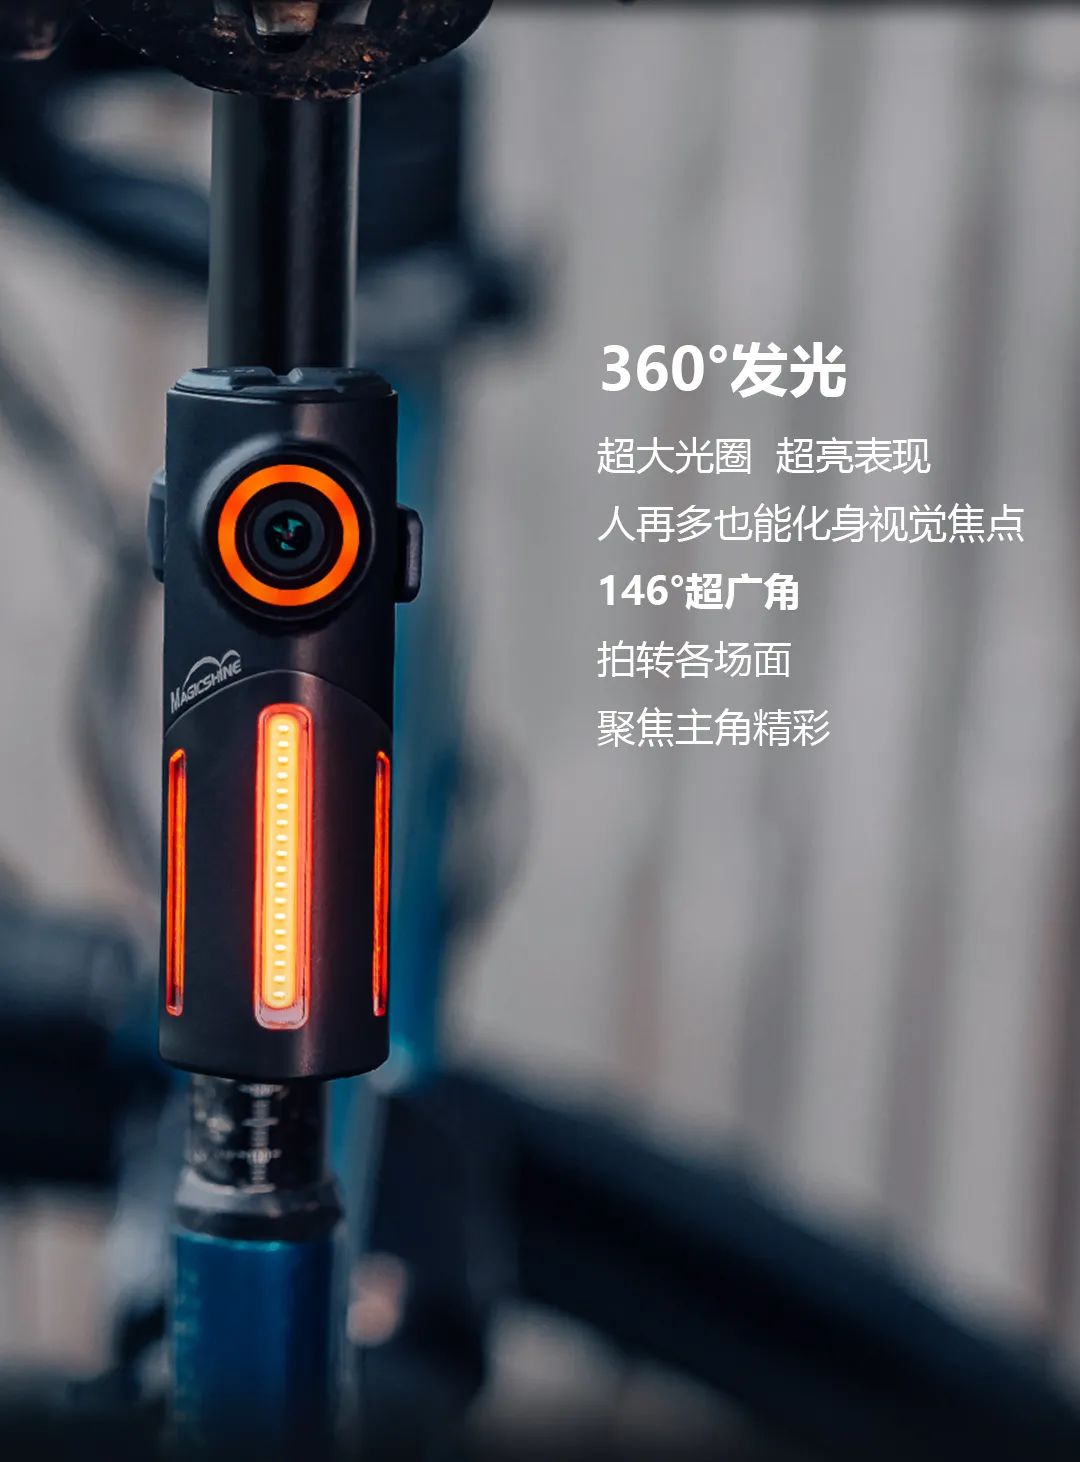 新品上市|迈极炫发布SEEMEE DV 尾灯记录仪